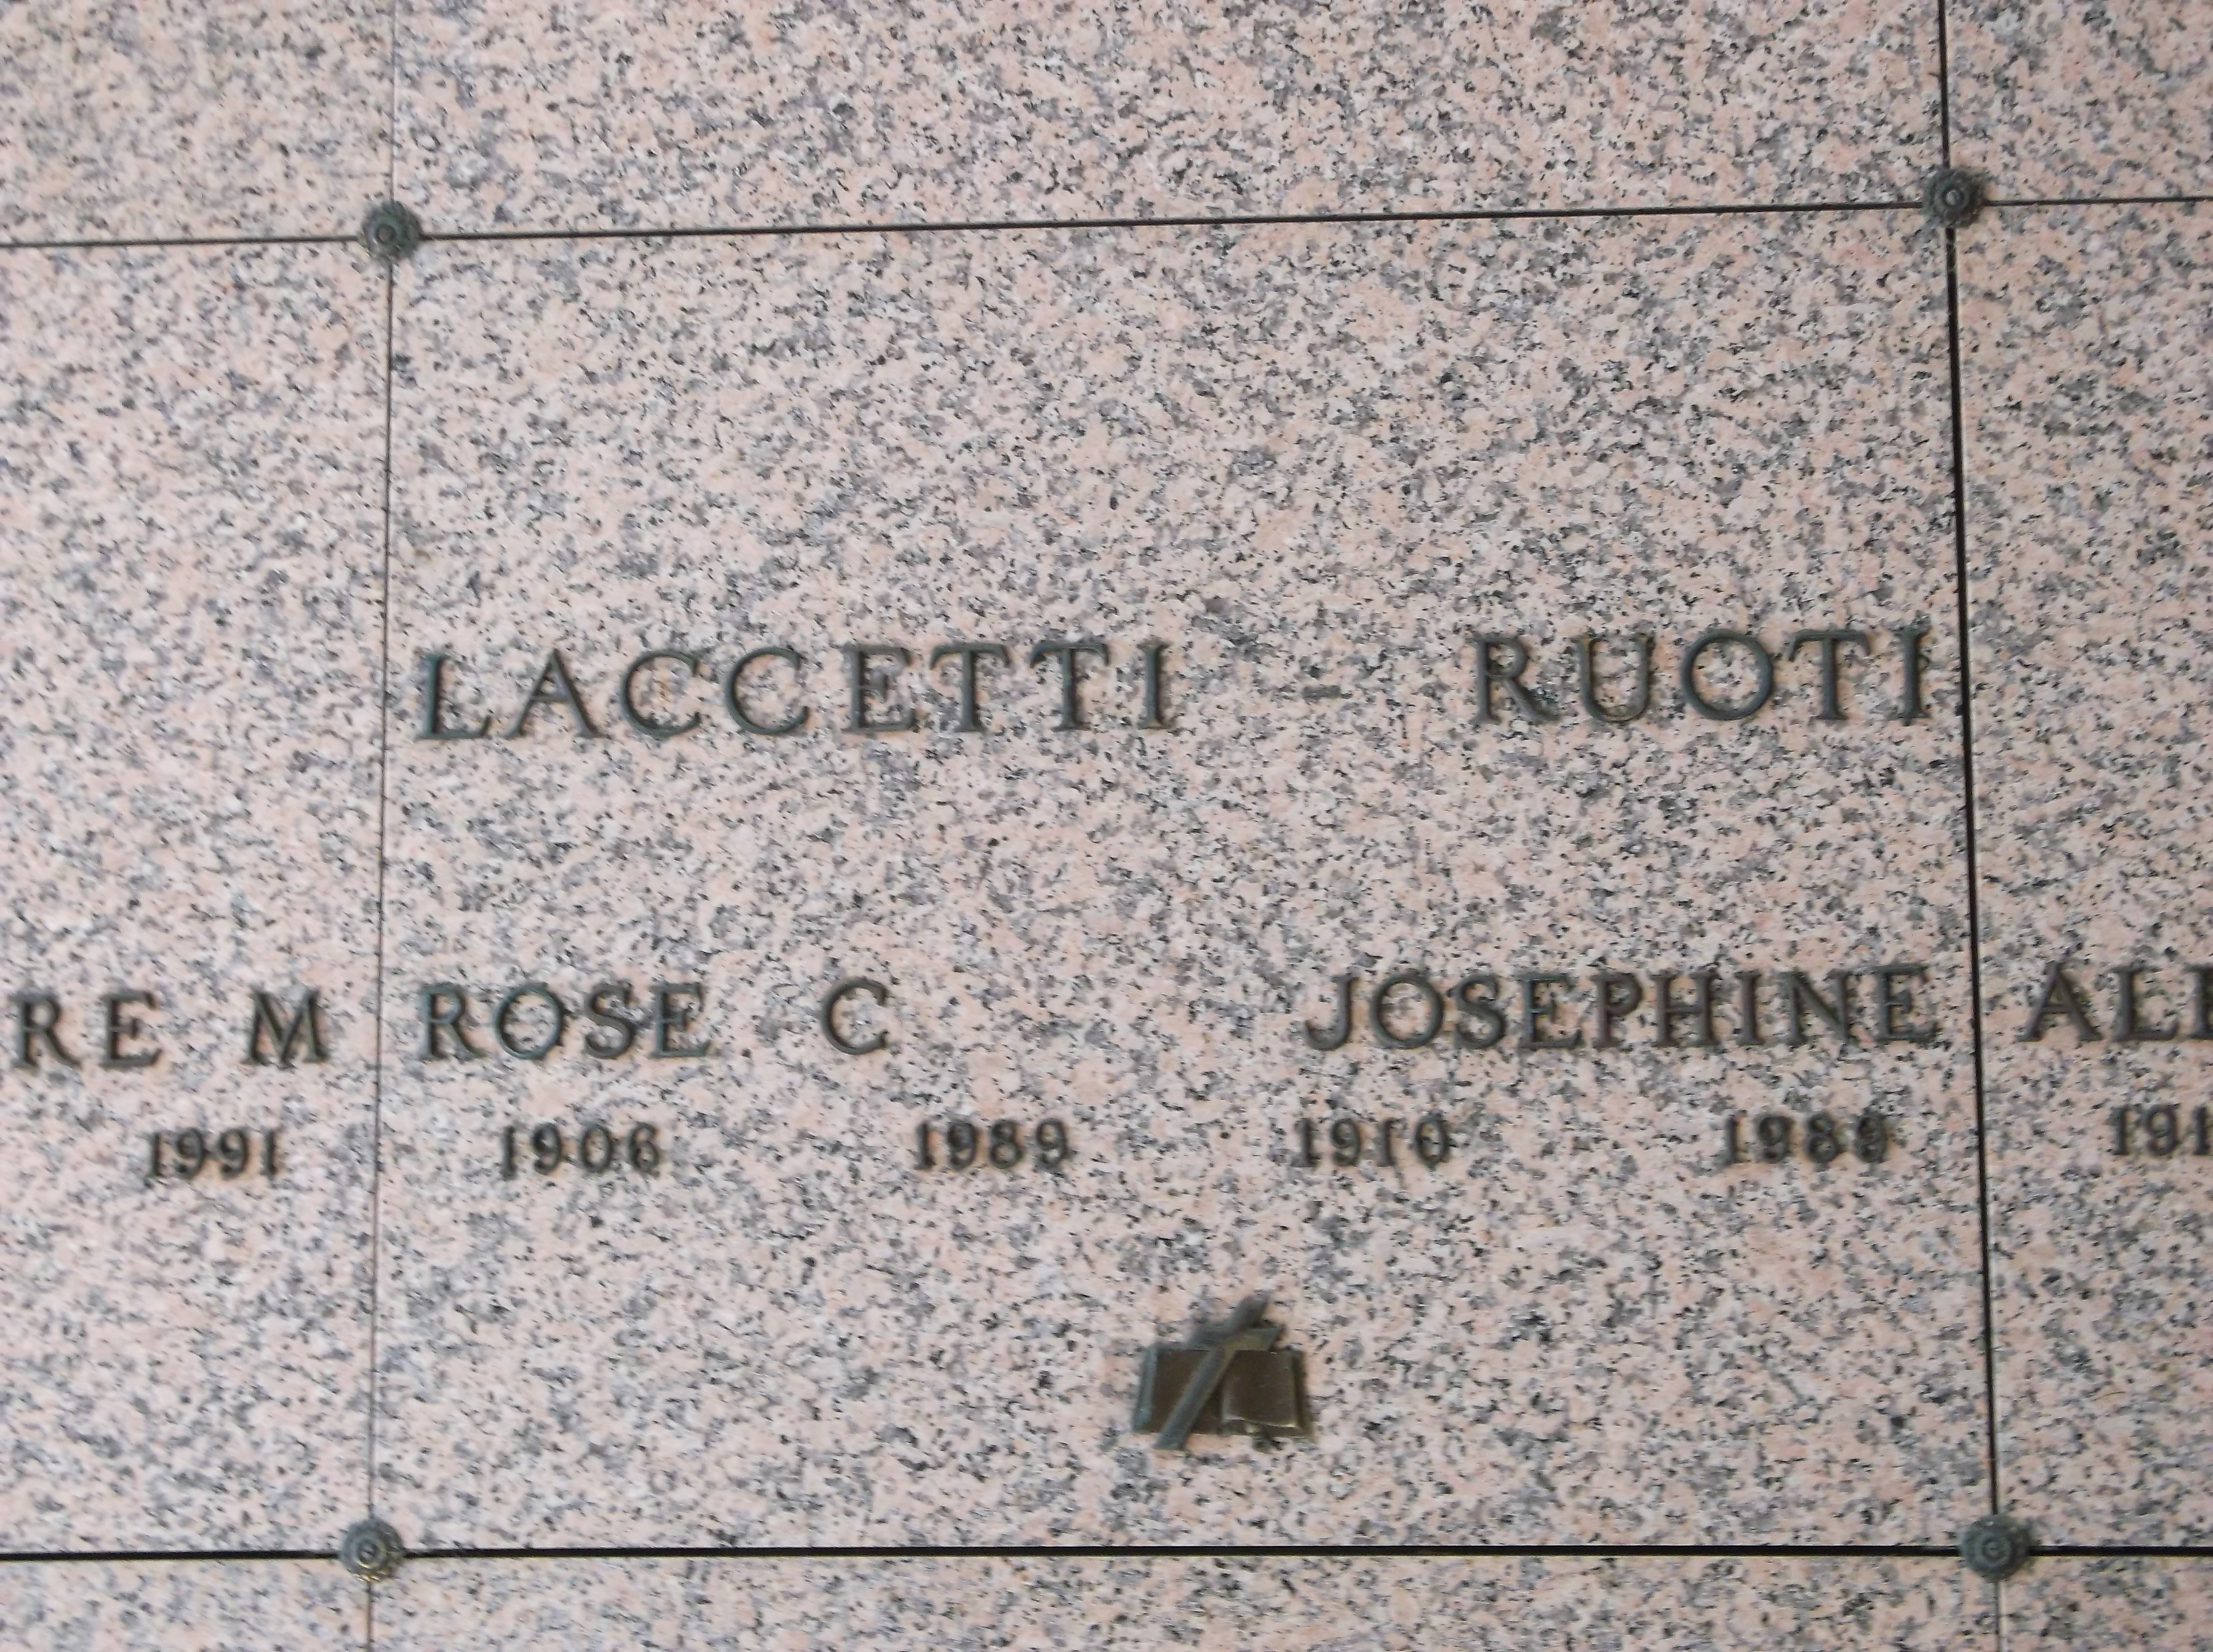 Rose C Laccetti